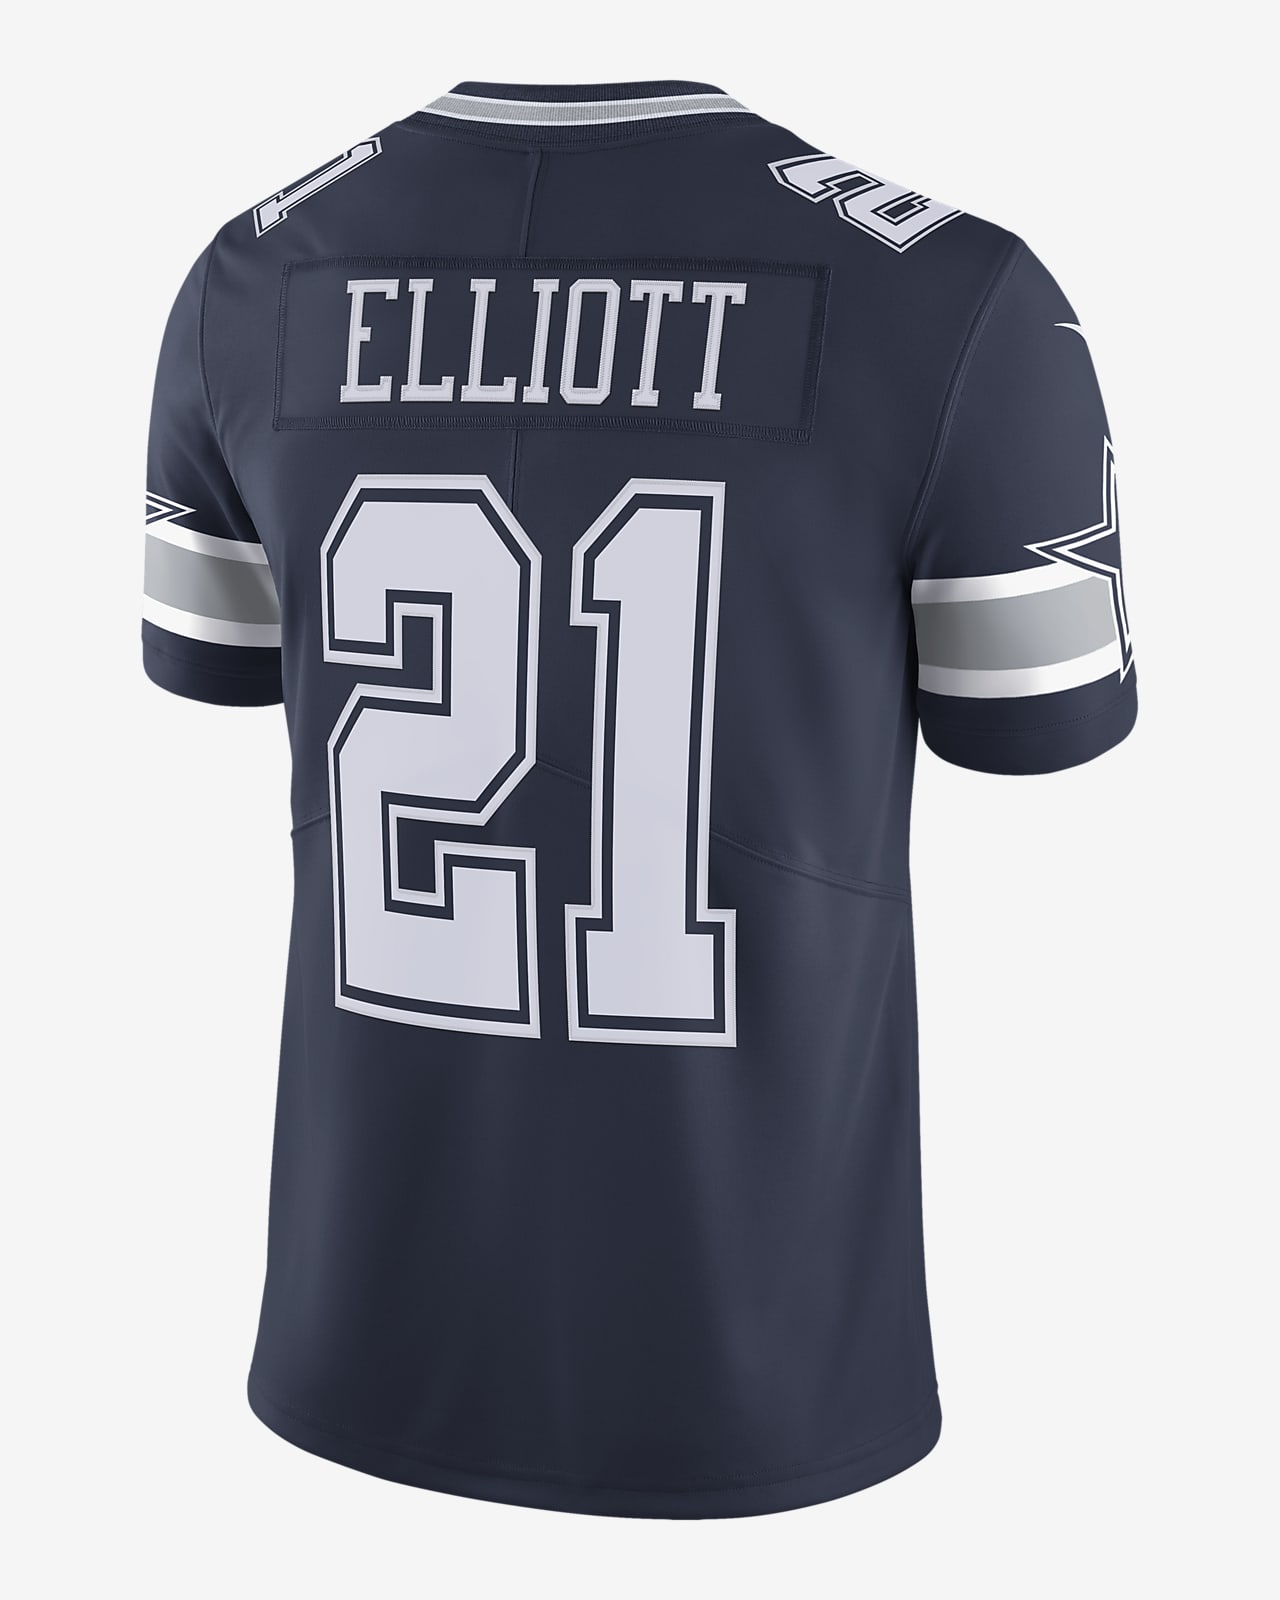 NFL Dallas Cowboys Vapor Untouchable (Ezekiel Elliott) Men's Limited Football Jersey